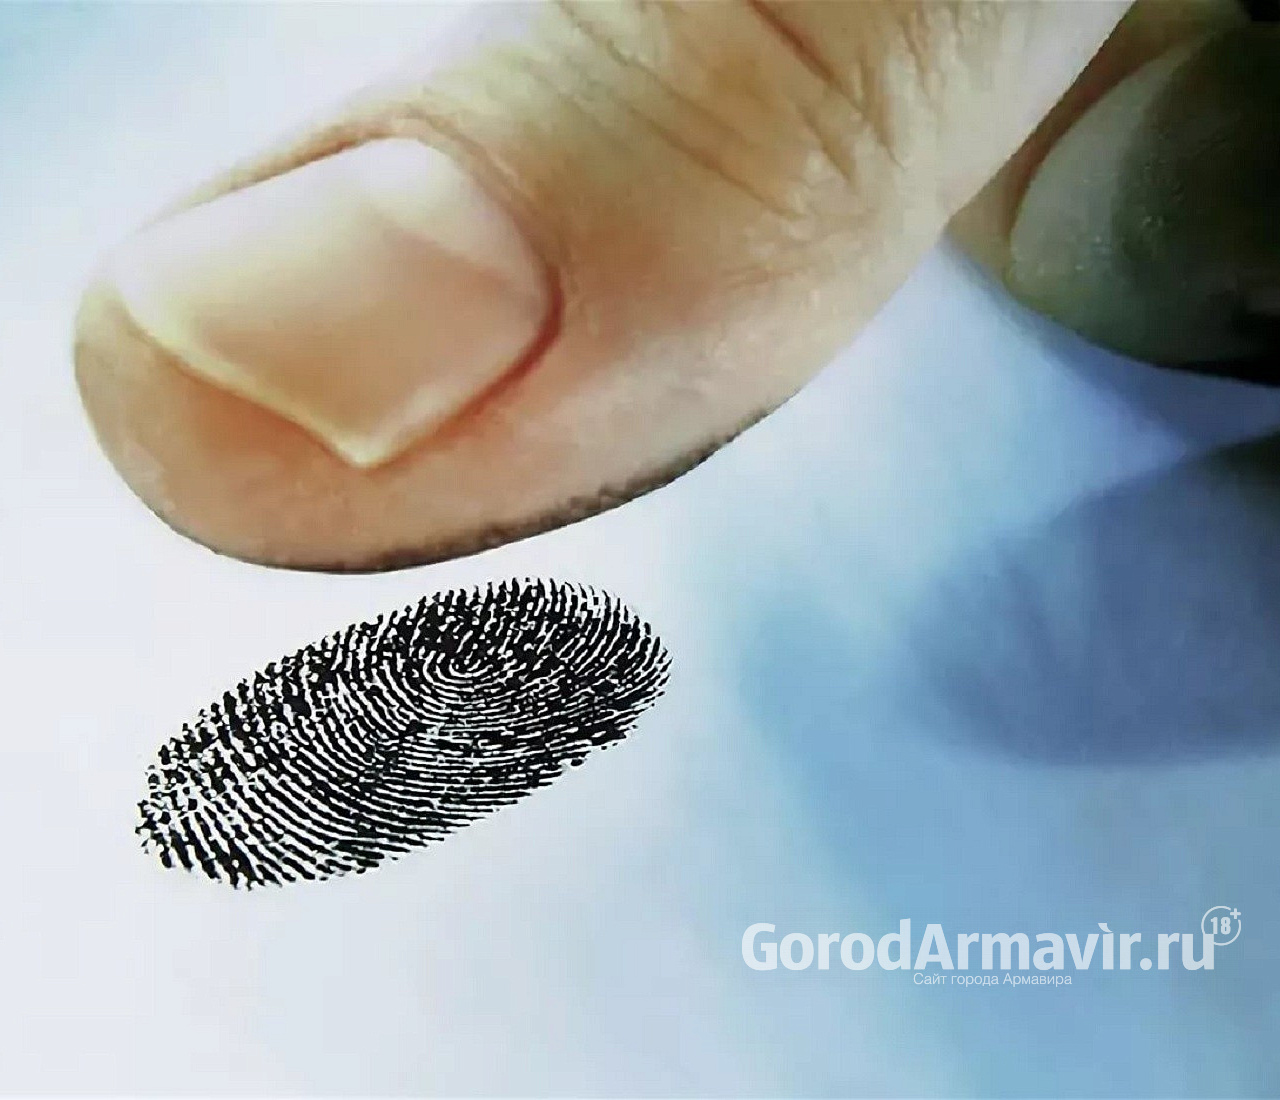 Отпечатки пальцев помогли полиции найти обокравших армавирку на 260 тыс руб рецидивистов 